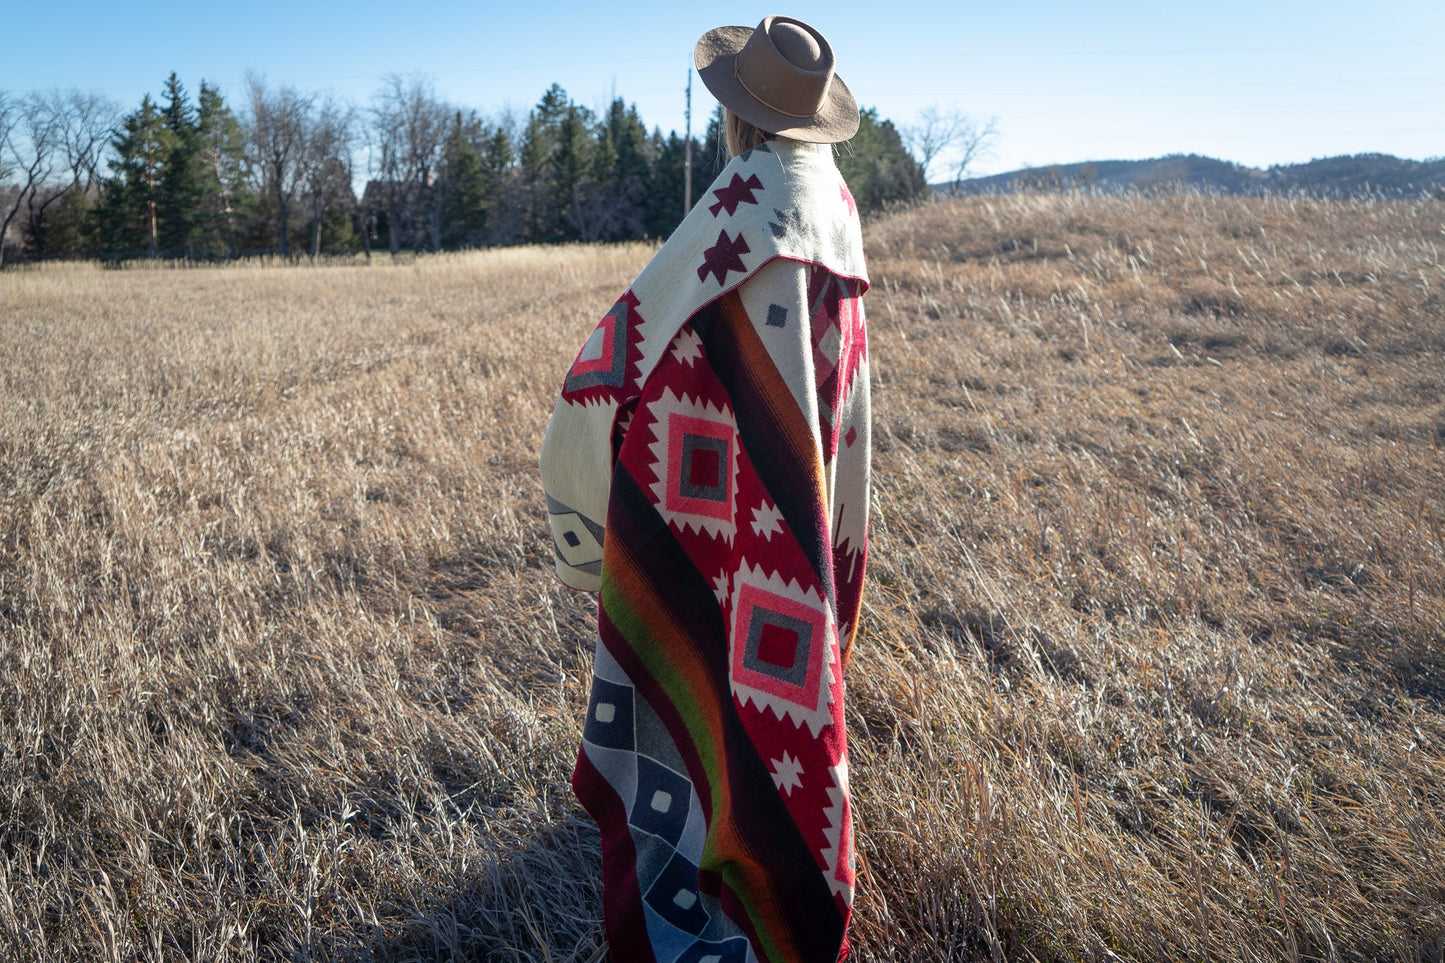 Alpaca Wool Reversible Blanket - Rojo 90" x 78”